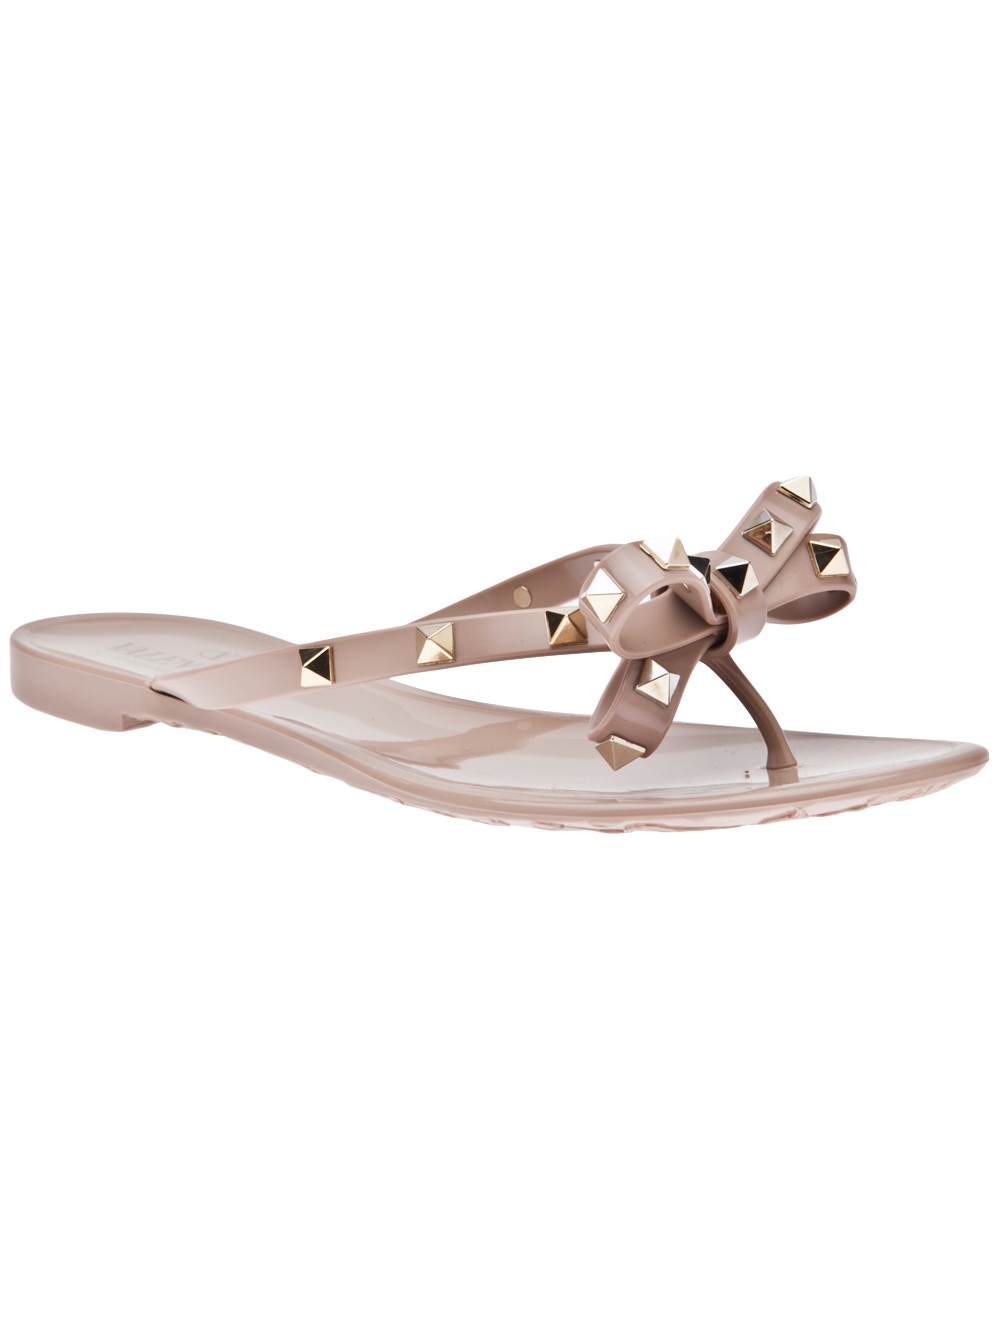 Valentino Rockstud Bow Sandals in Beige (cream) | Lyst